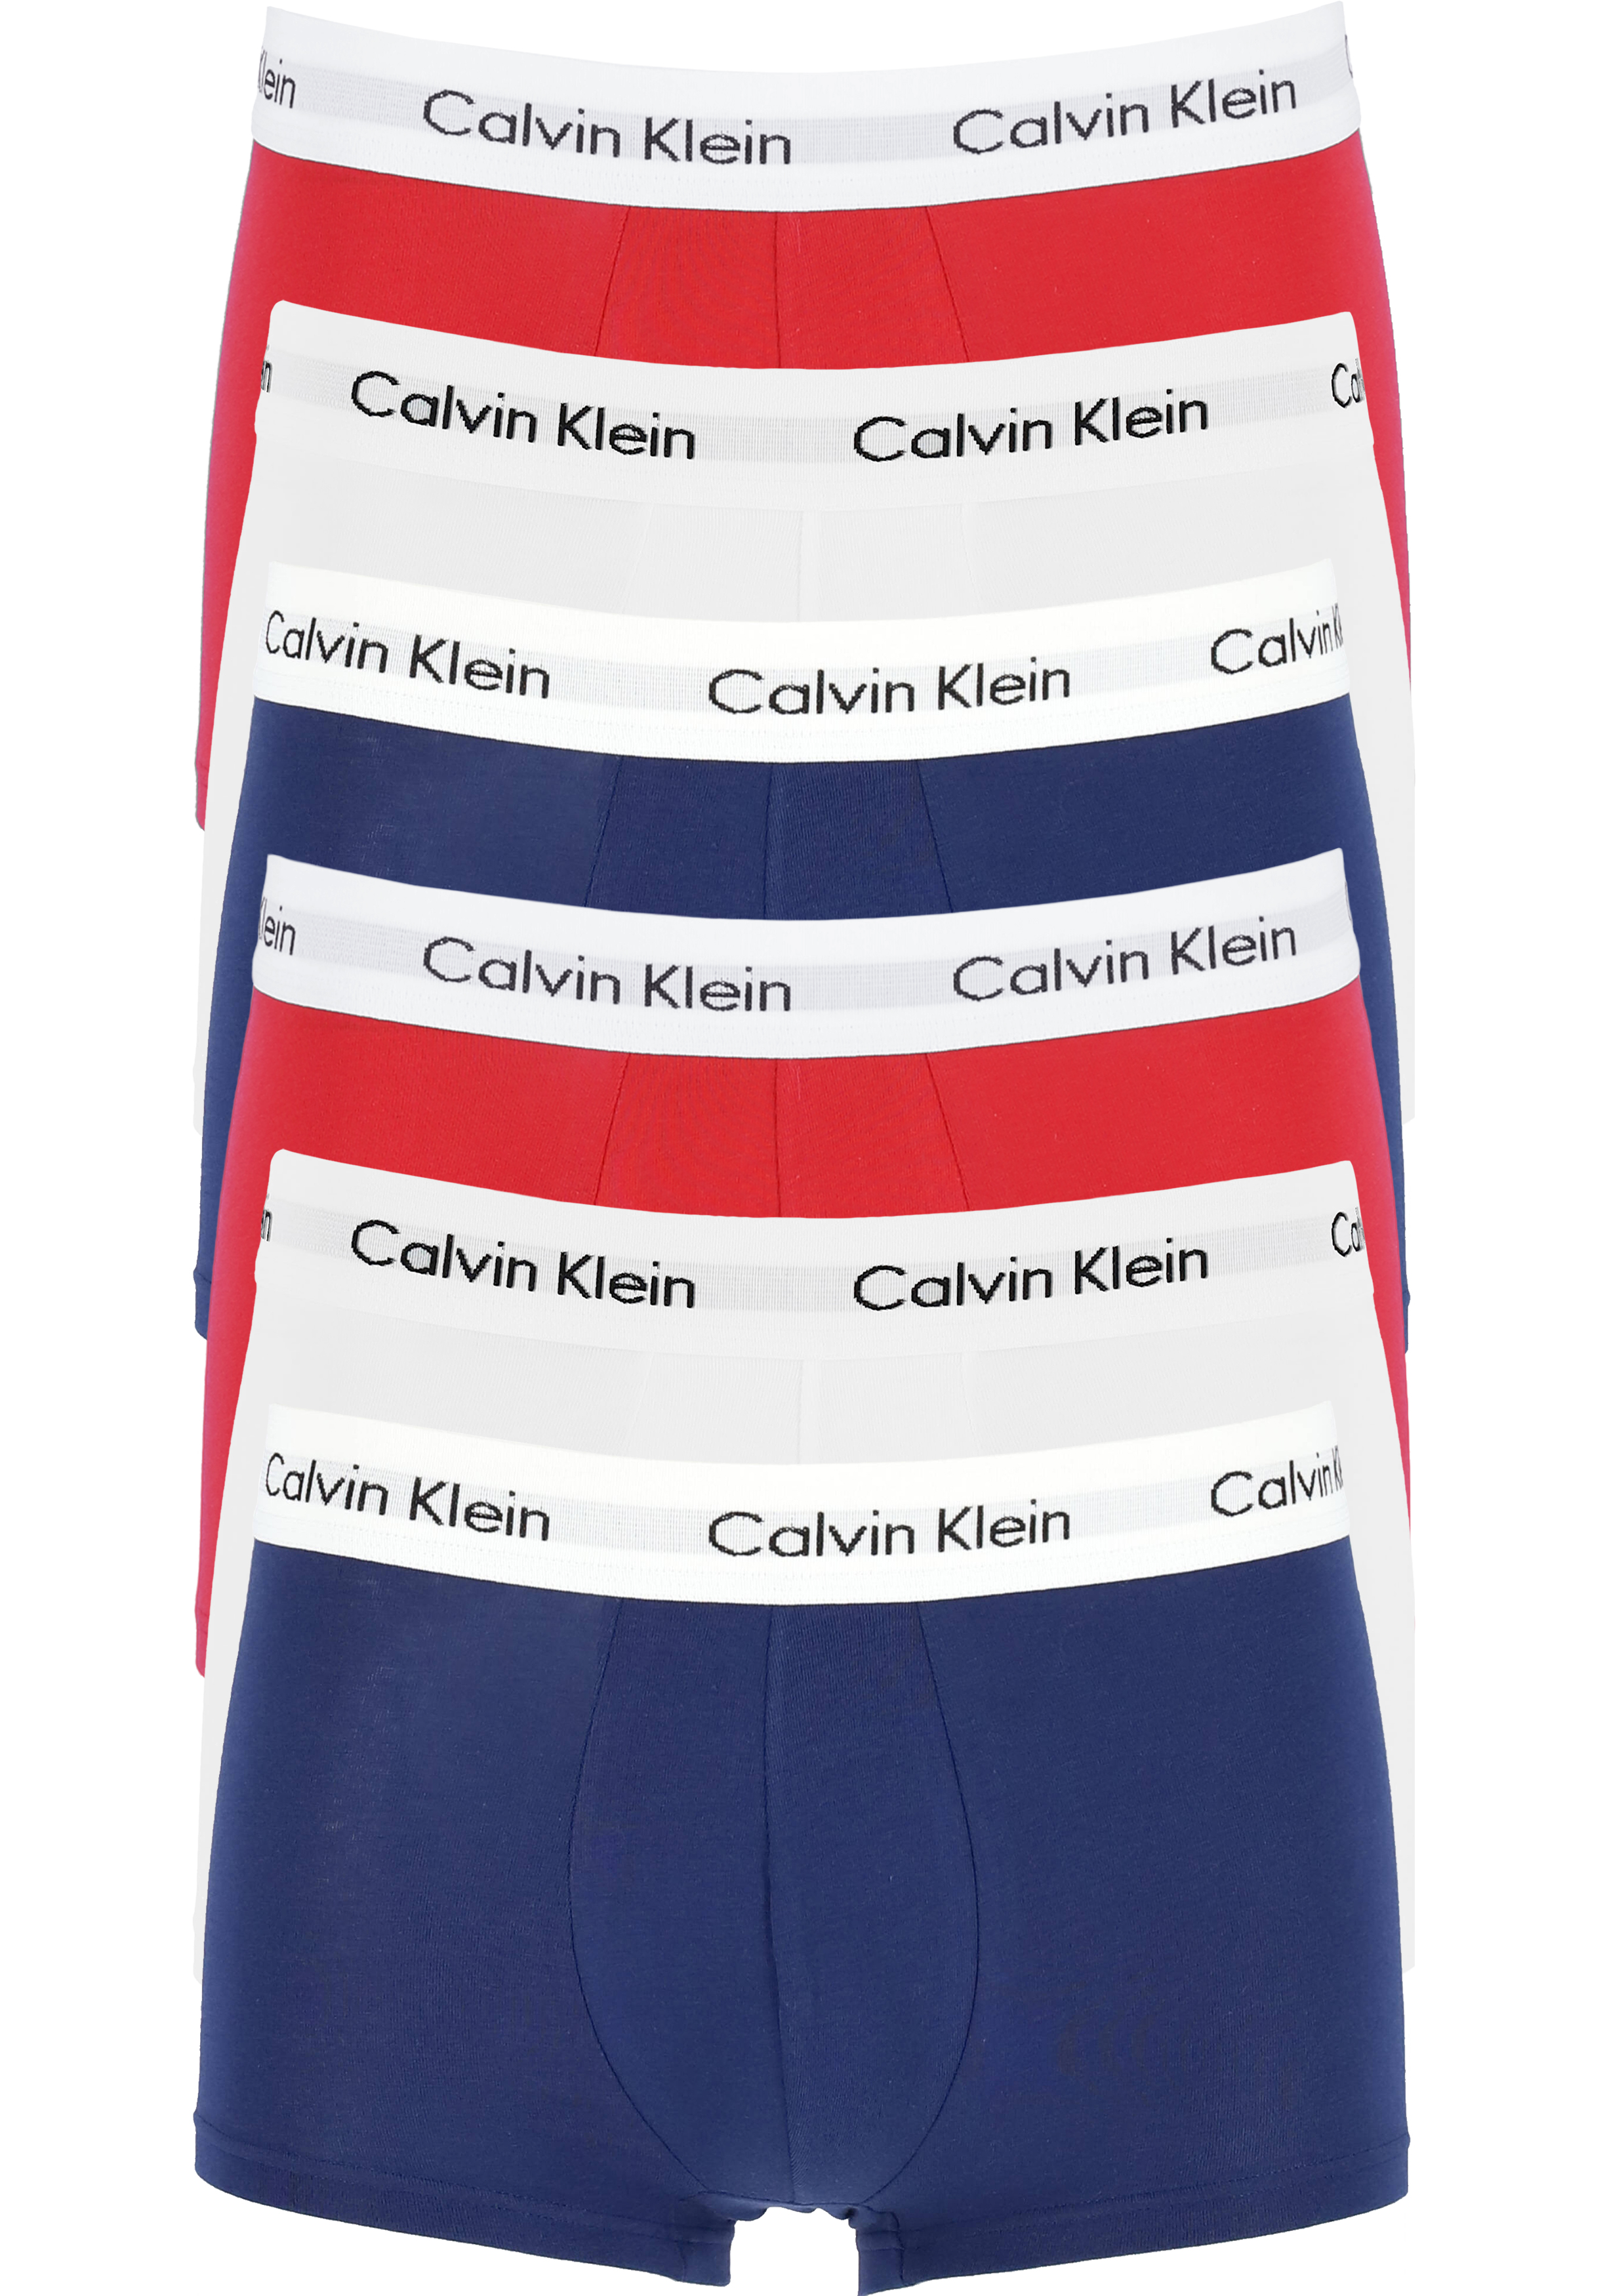 Actie 6-pack: Calvin Klein low rise trunks, lage heren boxers kort,... - DEALS: bestel artikelen van topmerken met korting